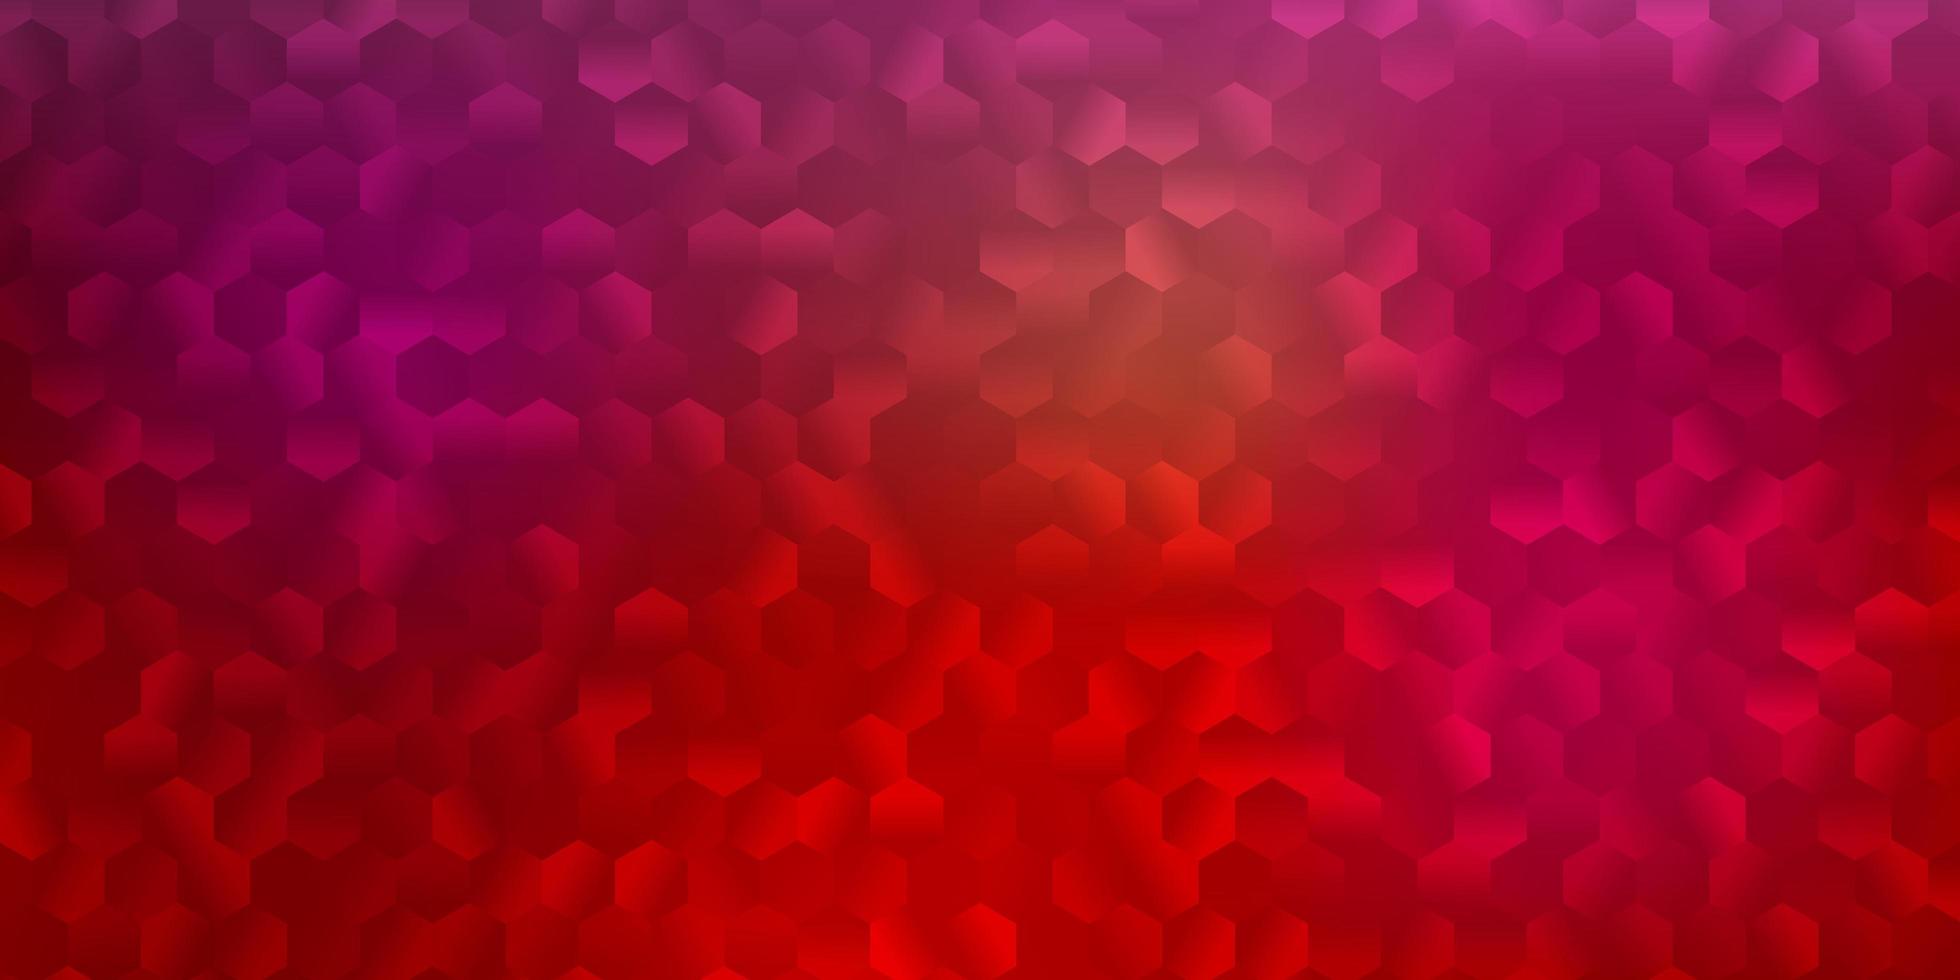 padrão de vetor vermelho claro com formas abstratas.